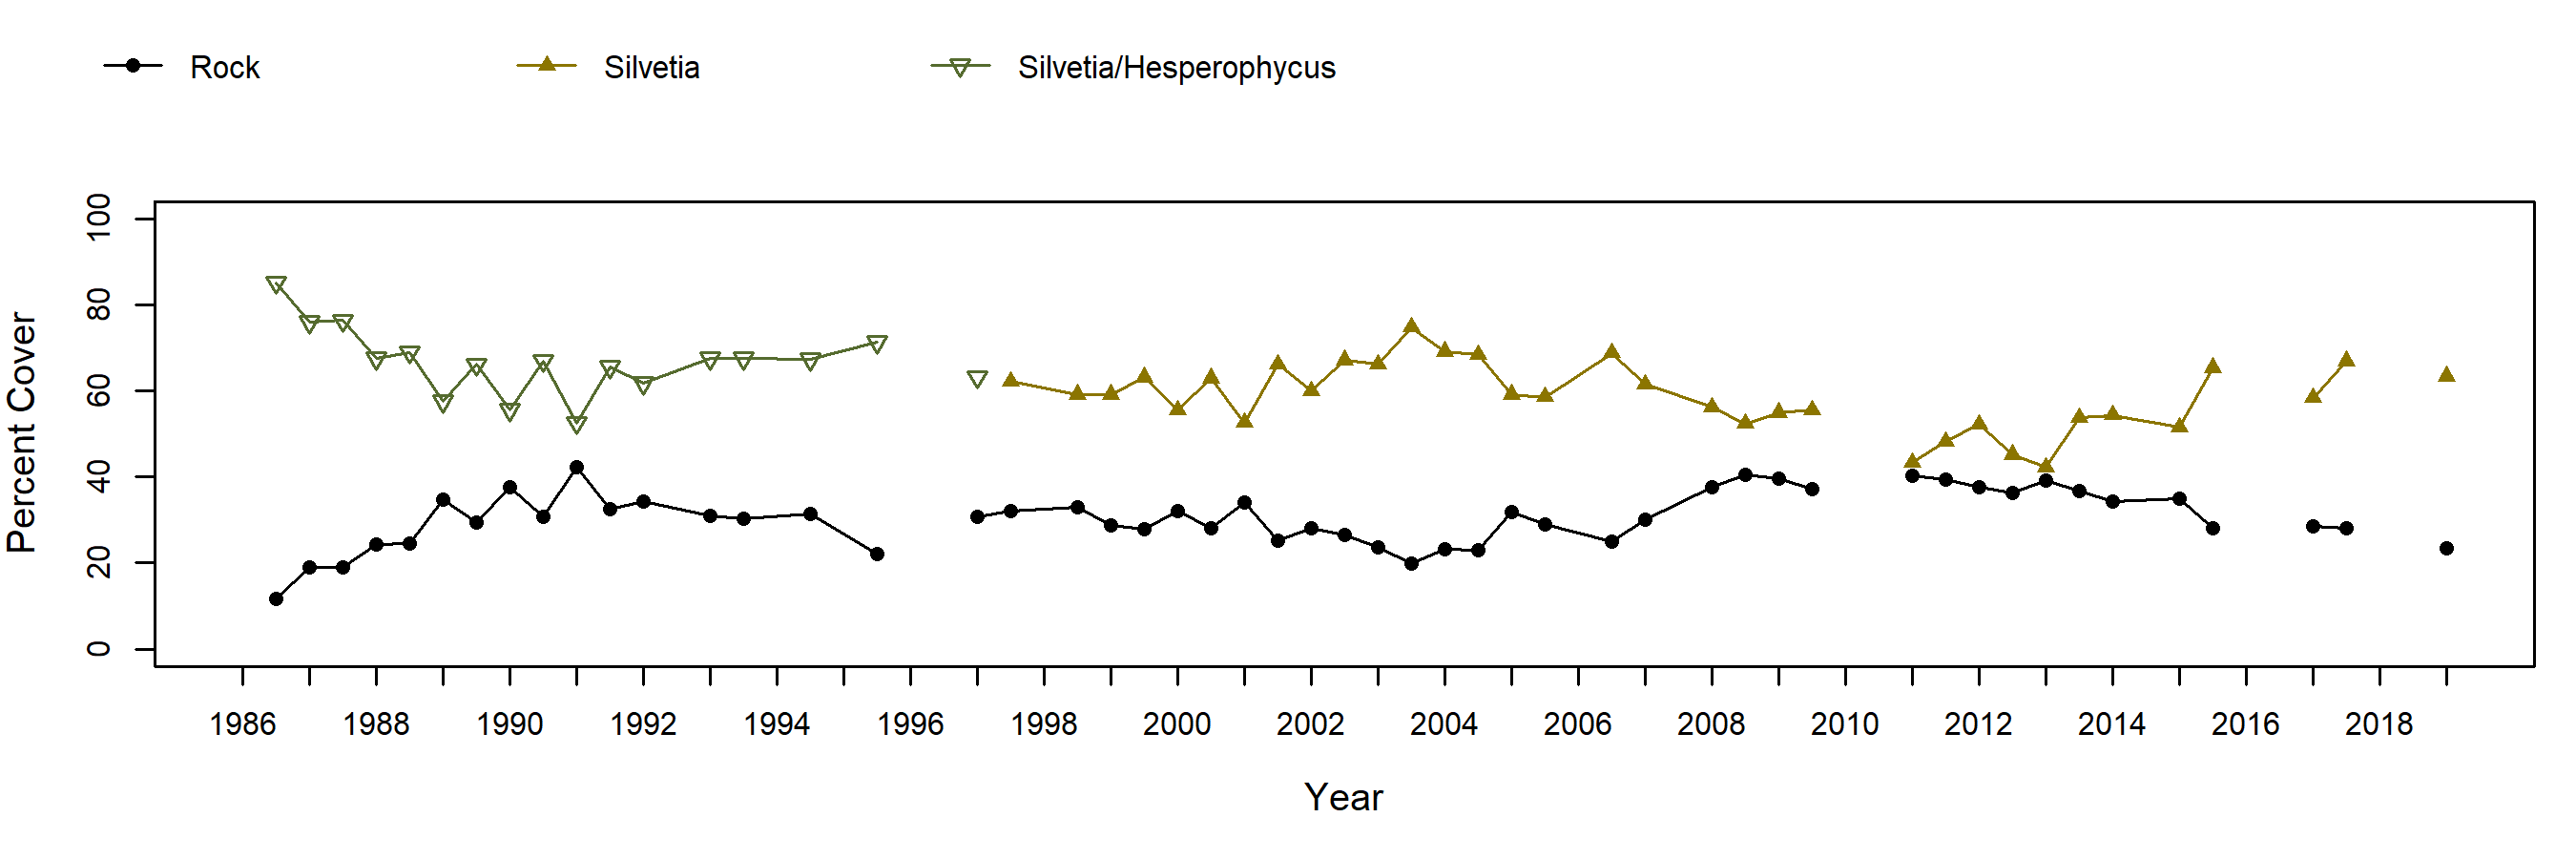 NW Talcott Silvetia trend plot